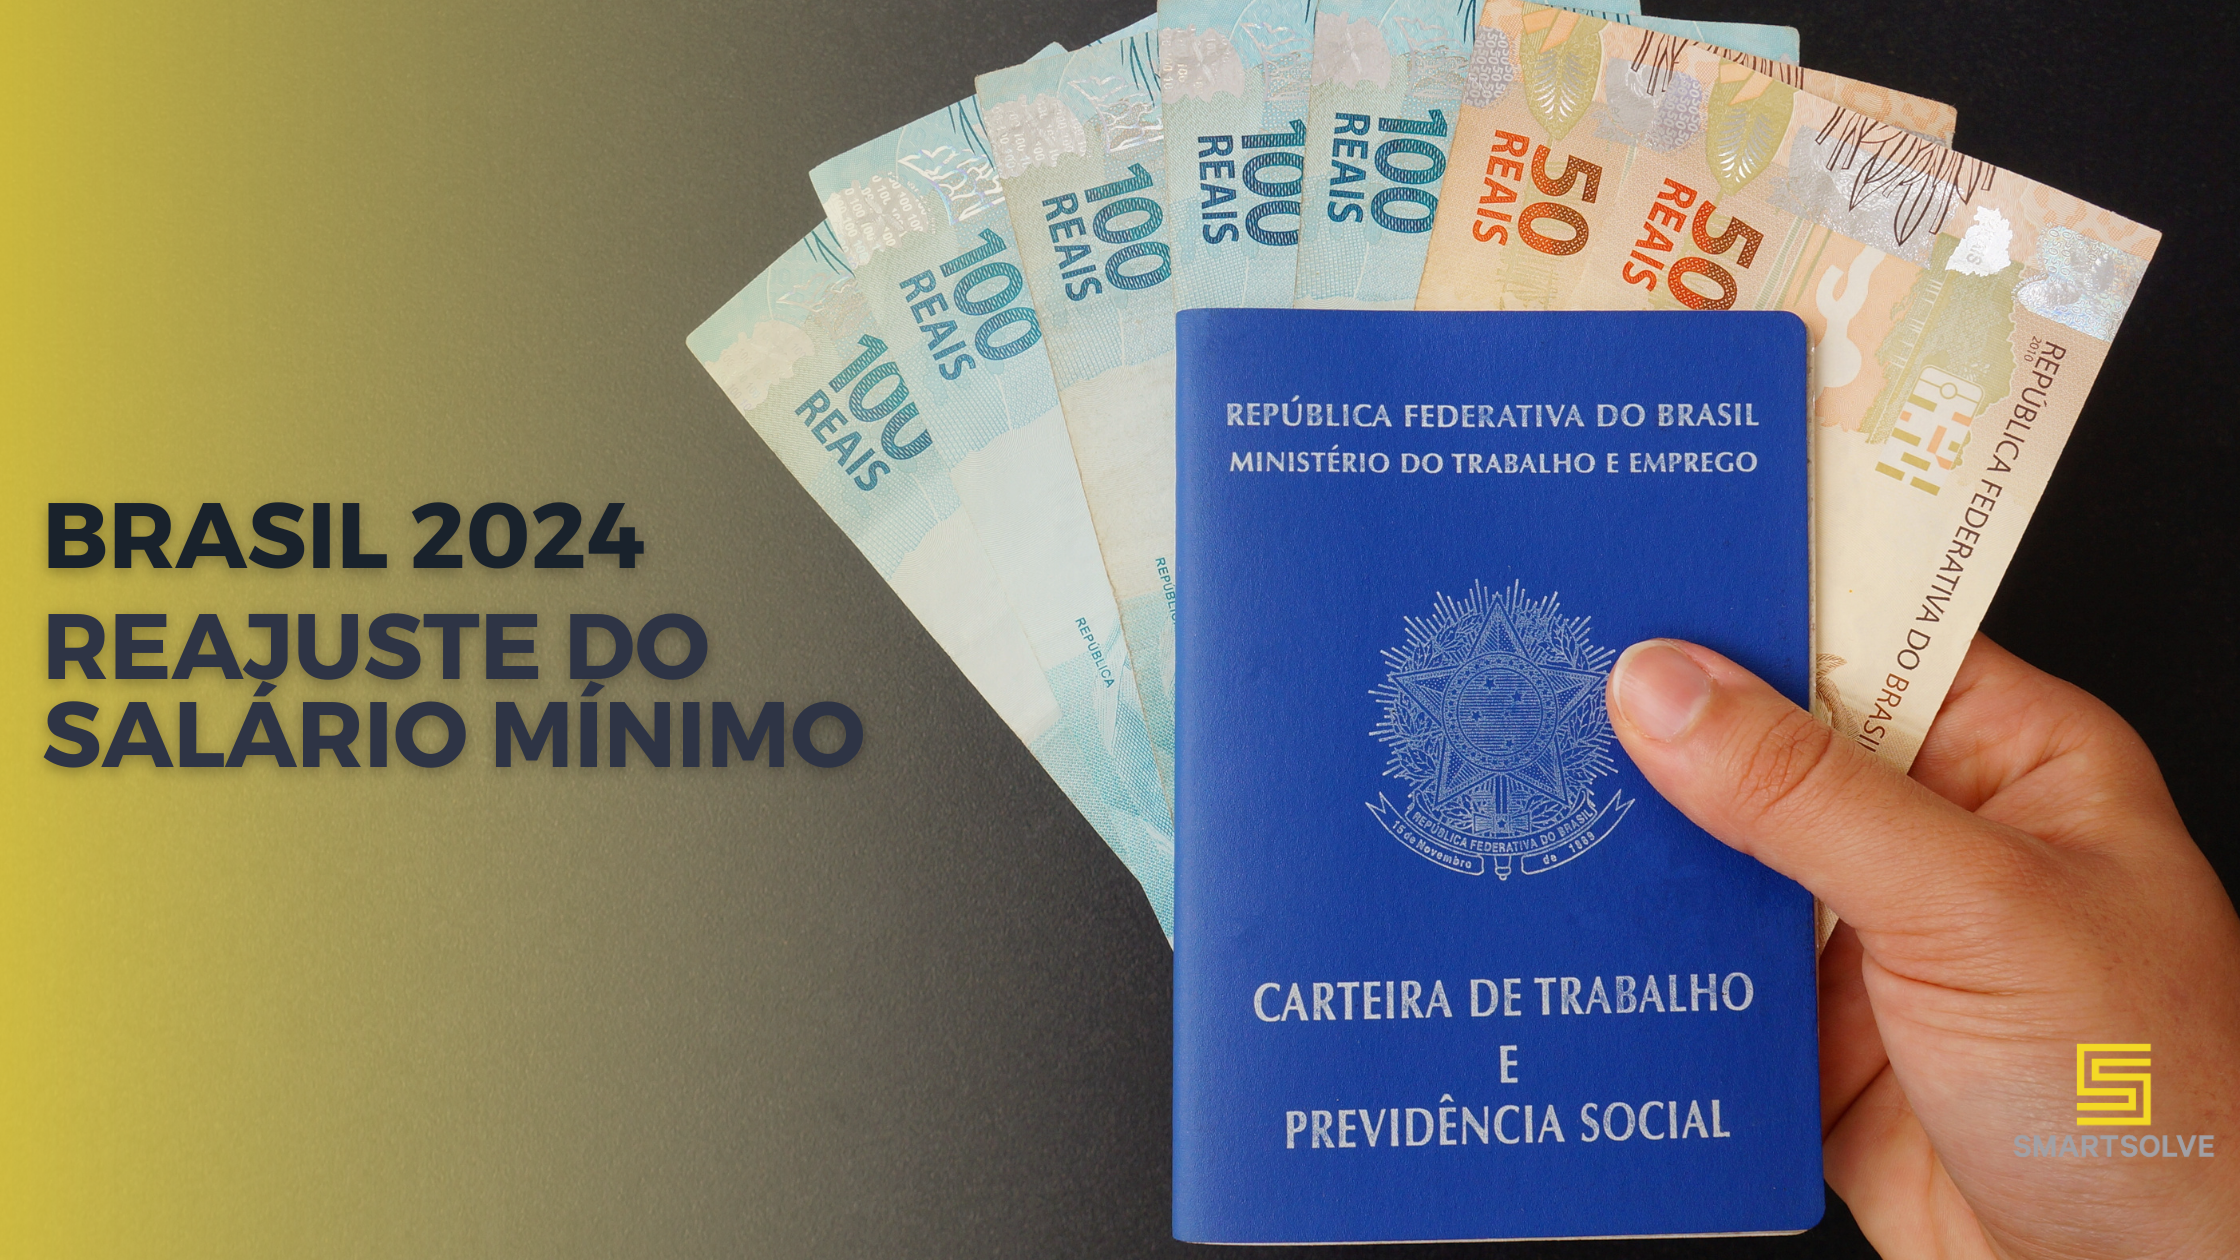 Brasil 2024: Reajuste do salário mínimo